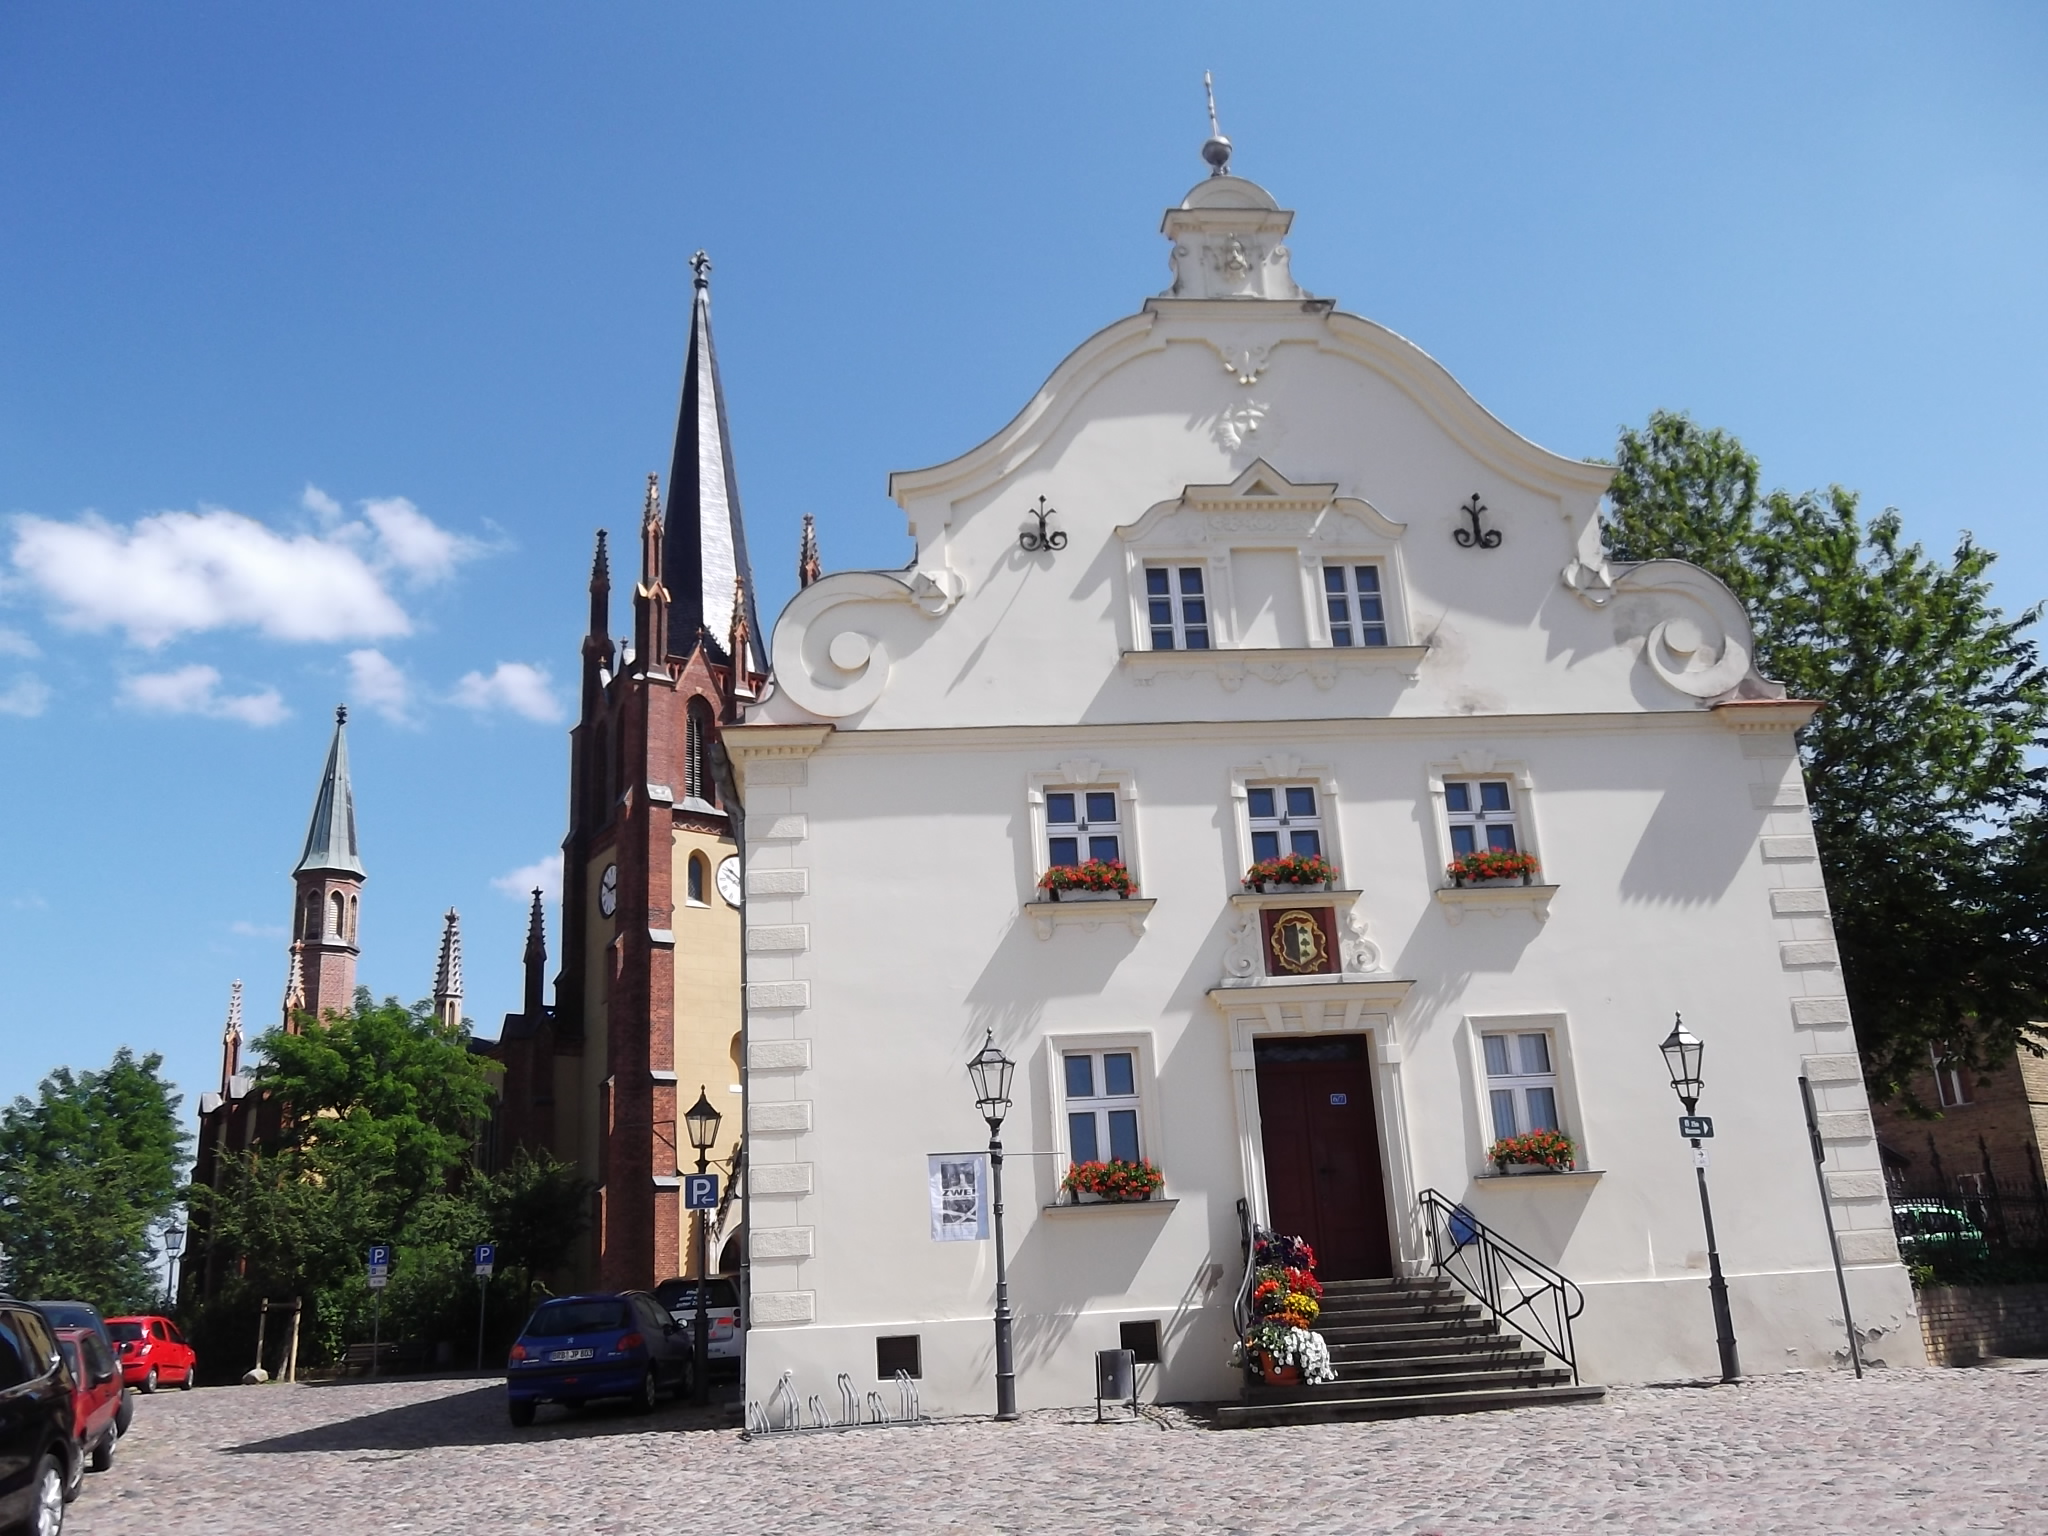 Historisches Rathaus von Werder, Kirchstr. 6